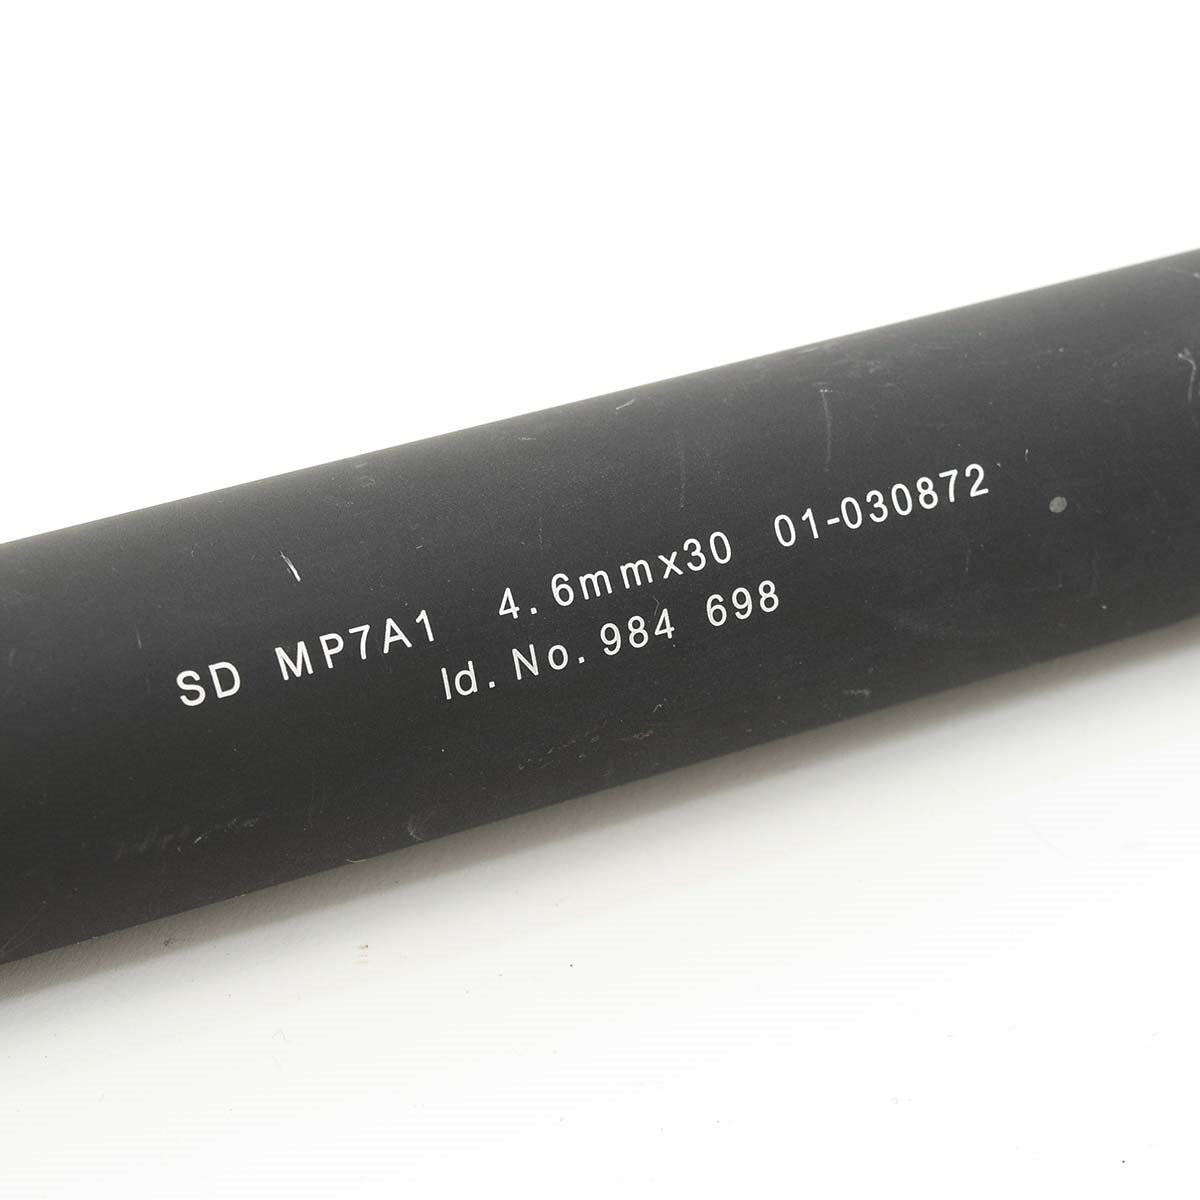 ★512822 MP7用サイレンサー SD MP7A1 4.6mm×30 01-030872 Id.No.984 698_画像2